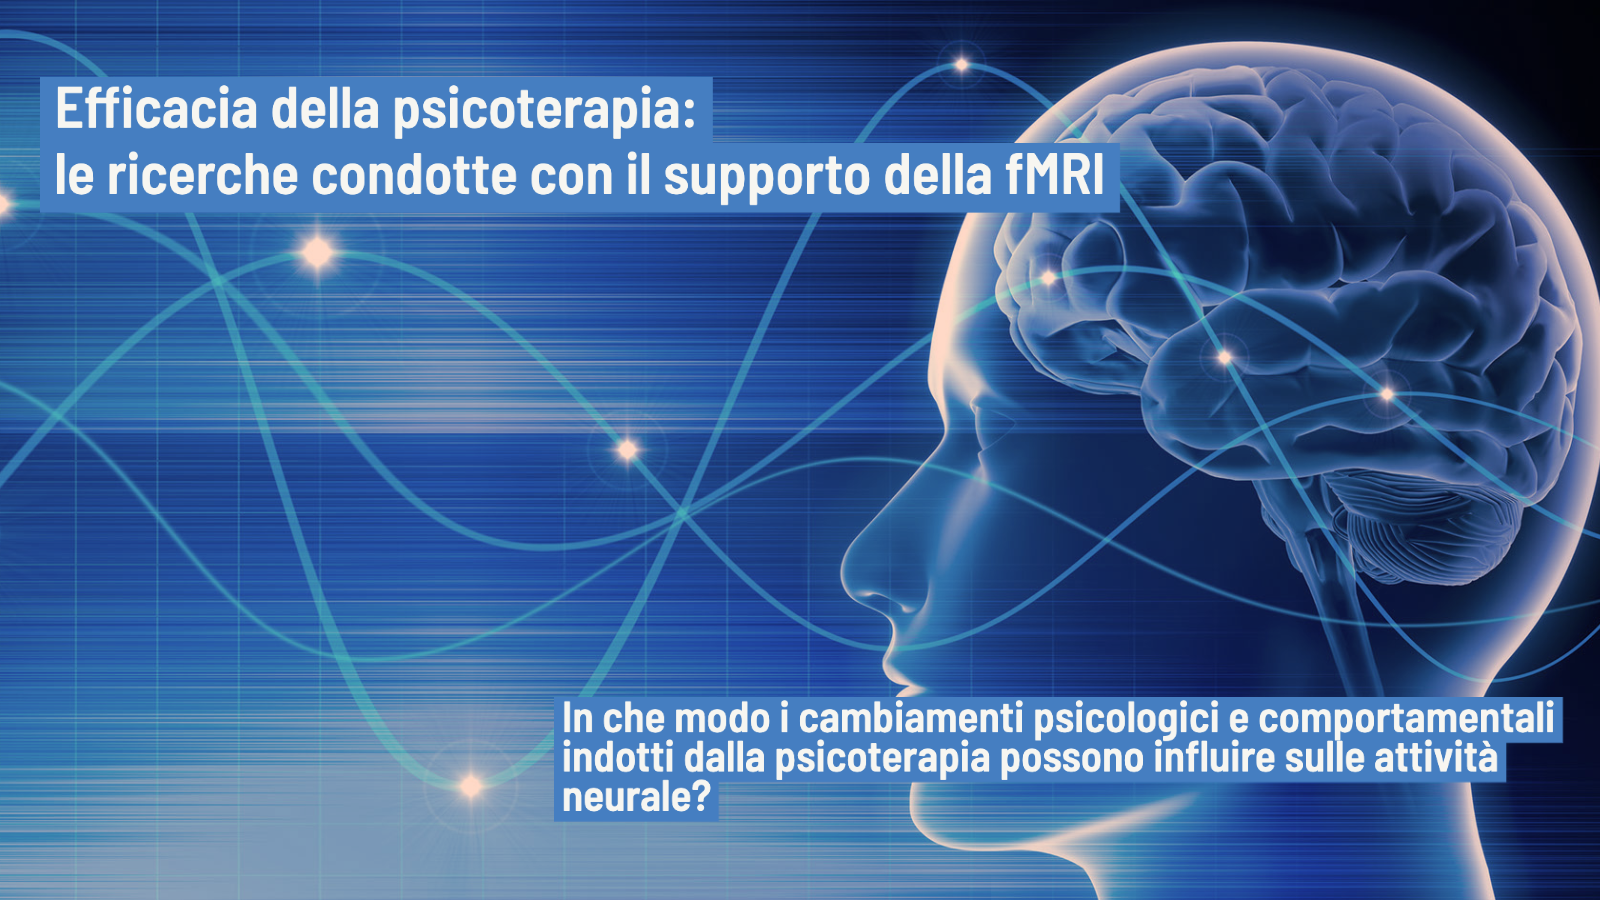 Psicoterapia ed efficacia le ricerche degli ultimi 10 anni supportate da fMRI-